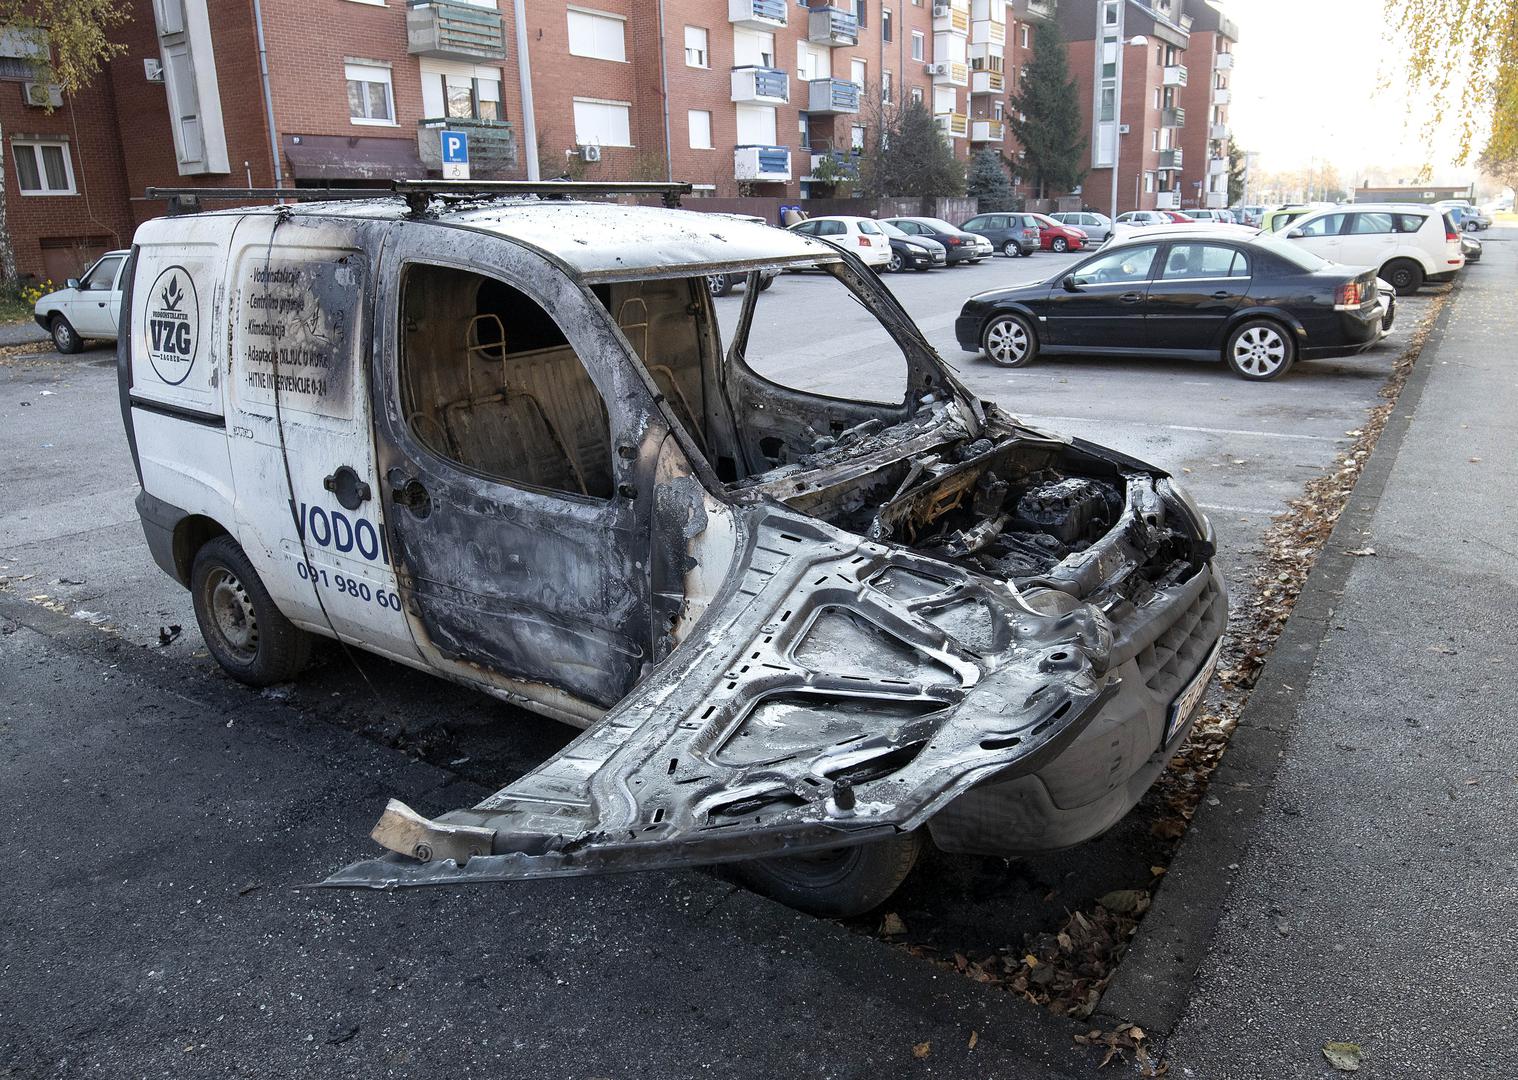 Uslijed požara oštećen je i osobni automobil marke Mitsubishi Lancer.